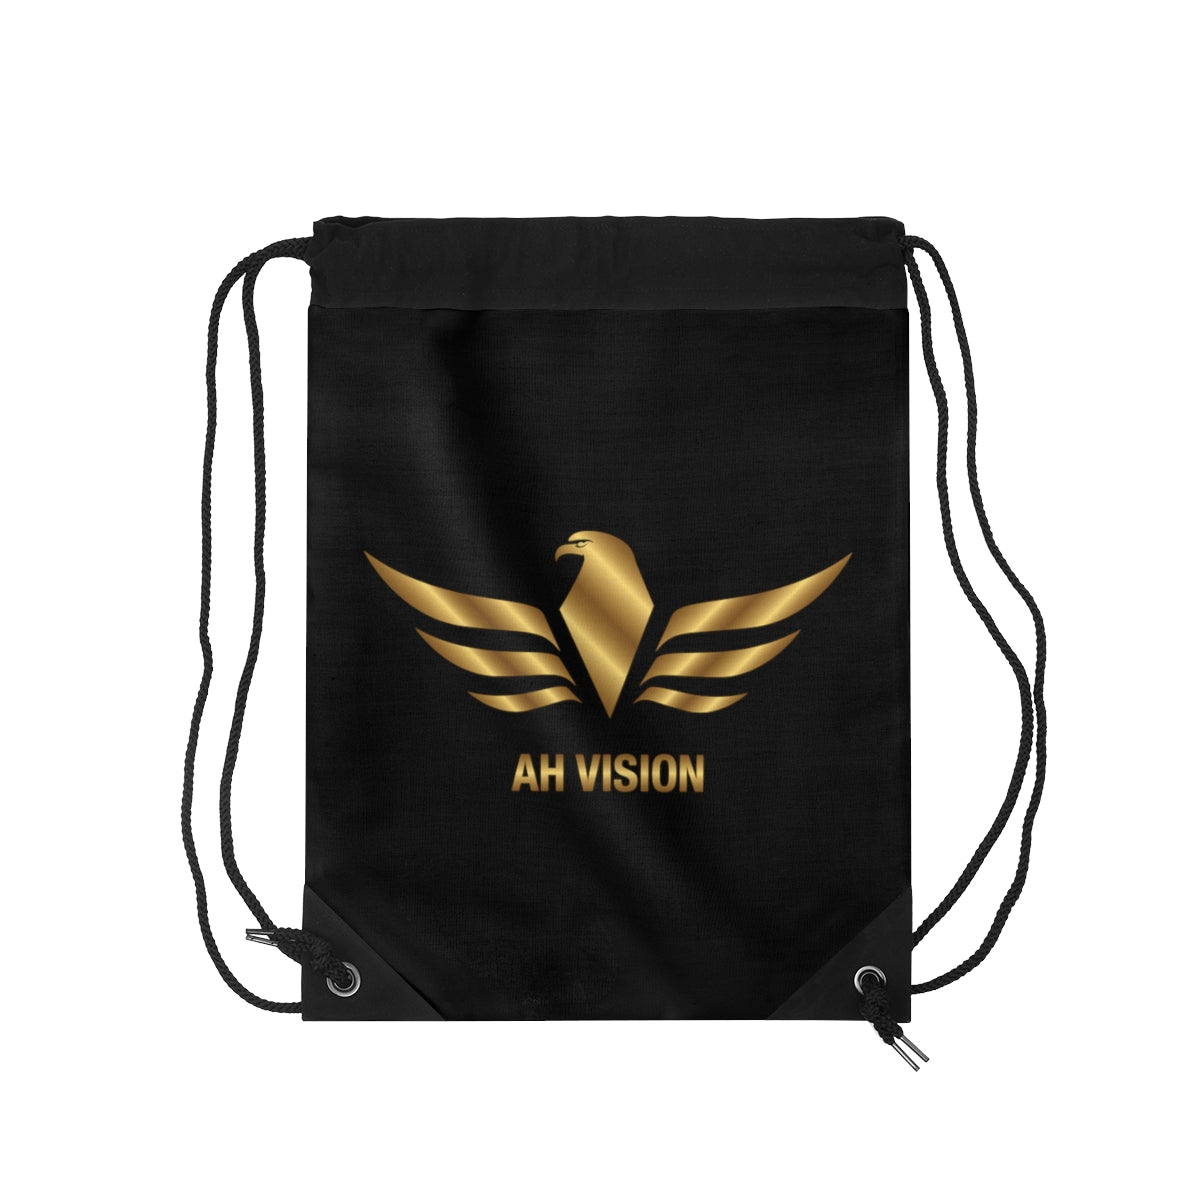 AH Vision Drawstring Bag - AH VISION